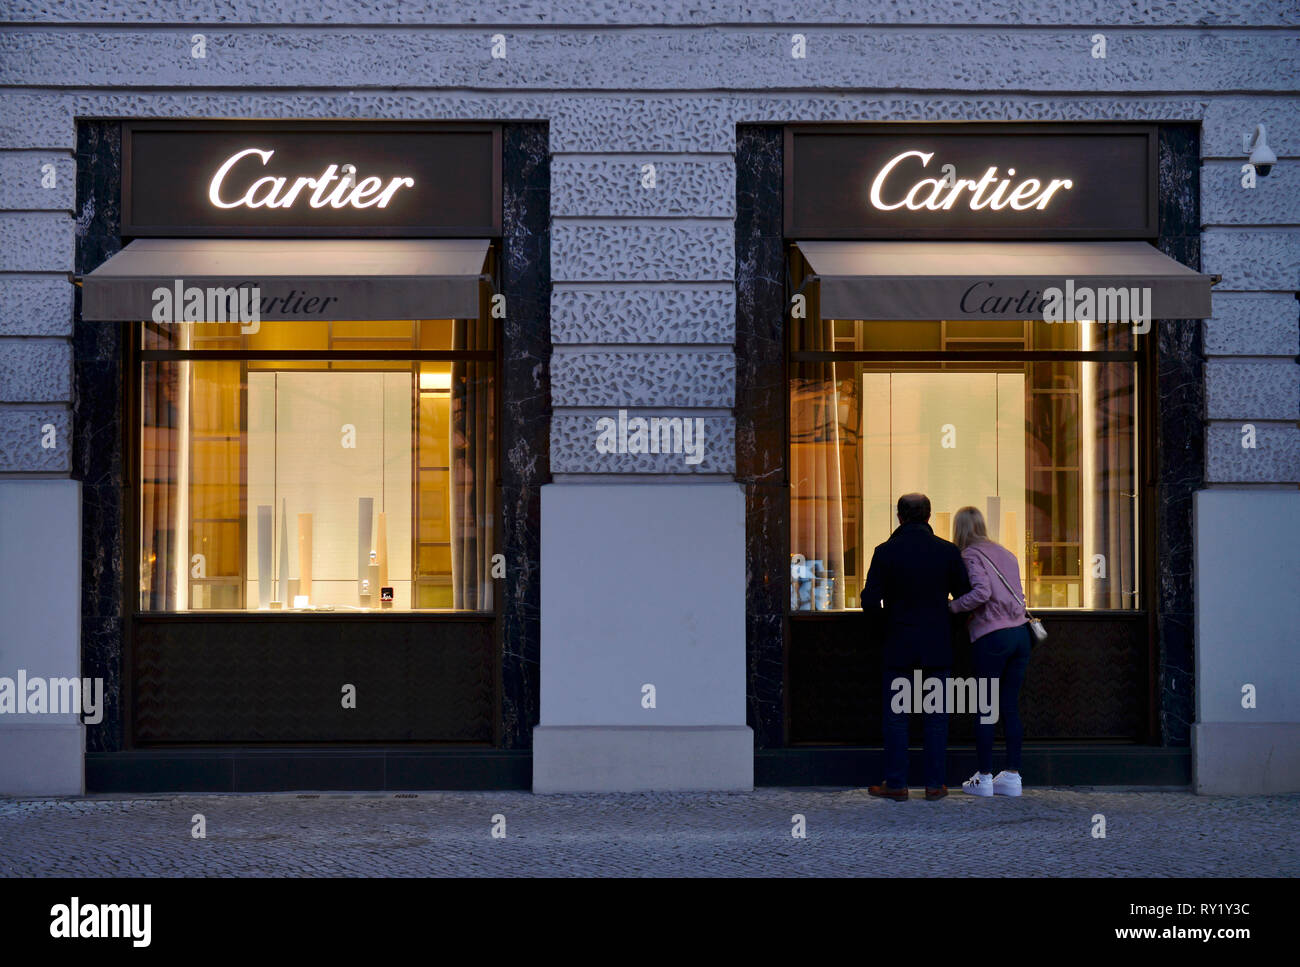 Juwelier Cartier, Kurfuerstendamm 